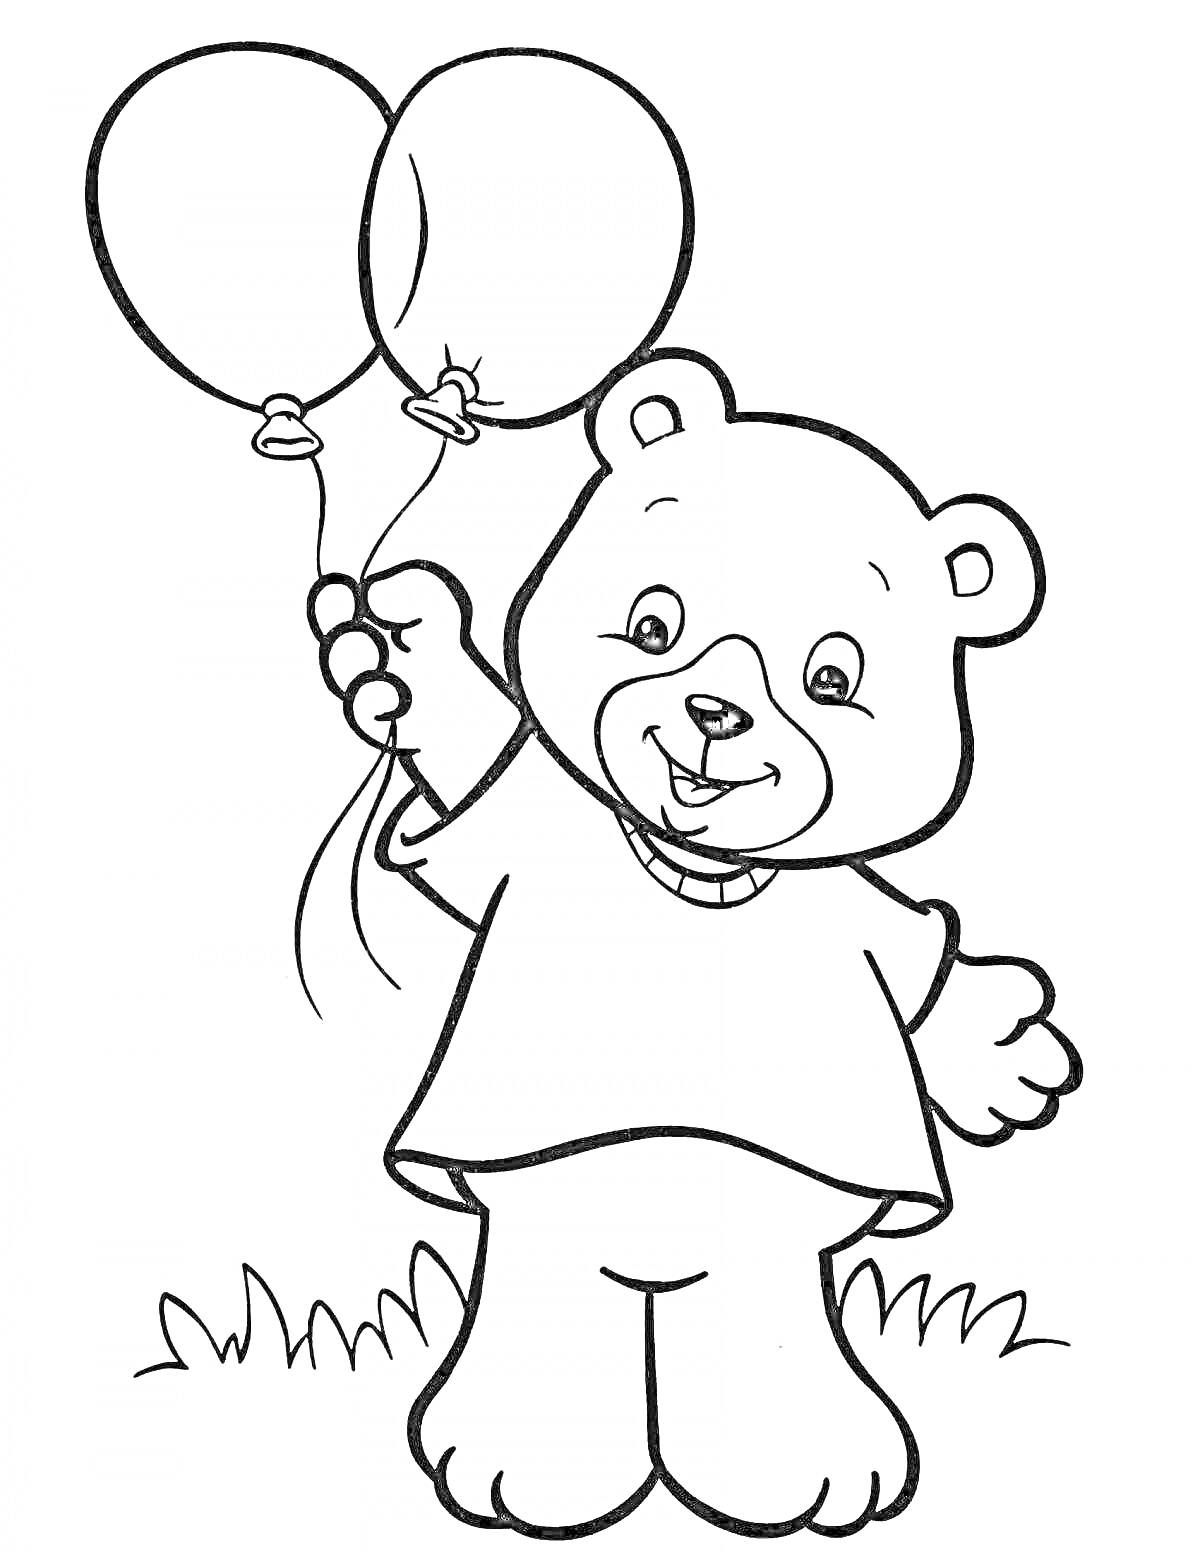 Раскраска Медвежонок с двумя шарами на траве